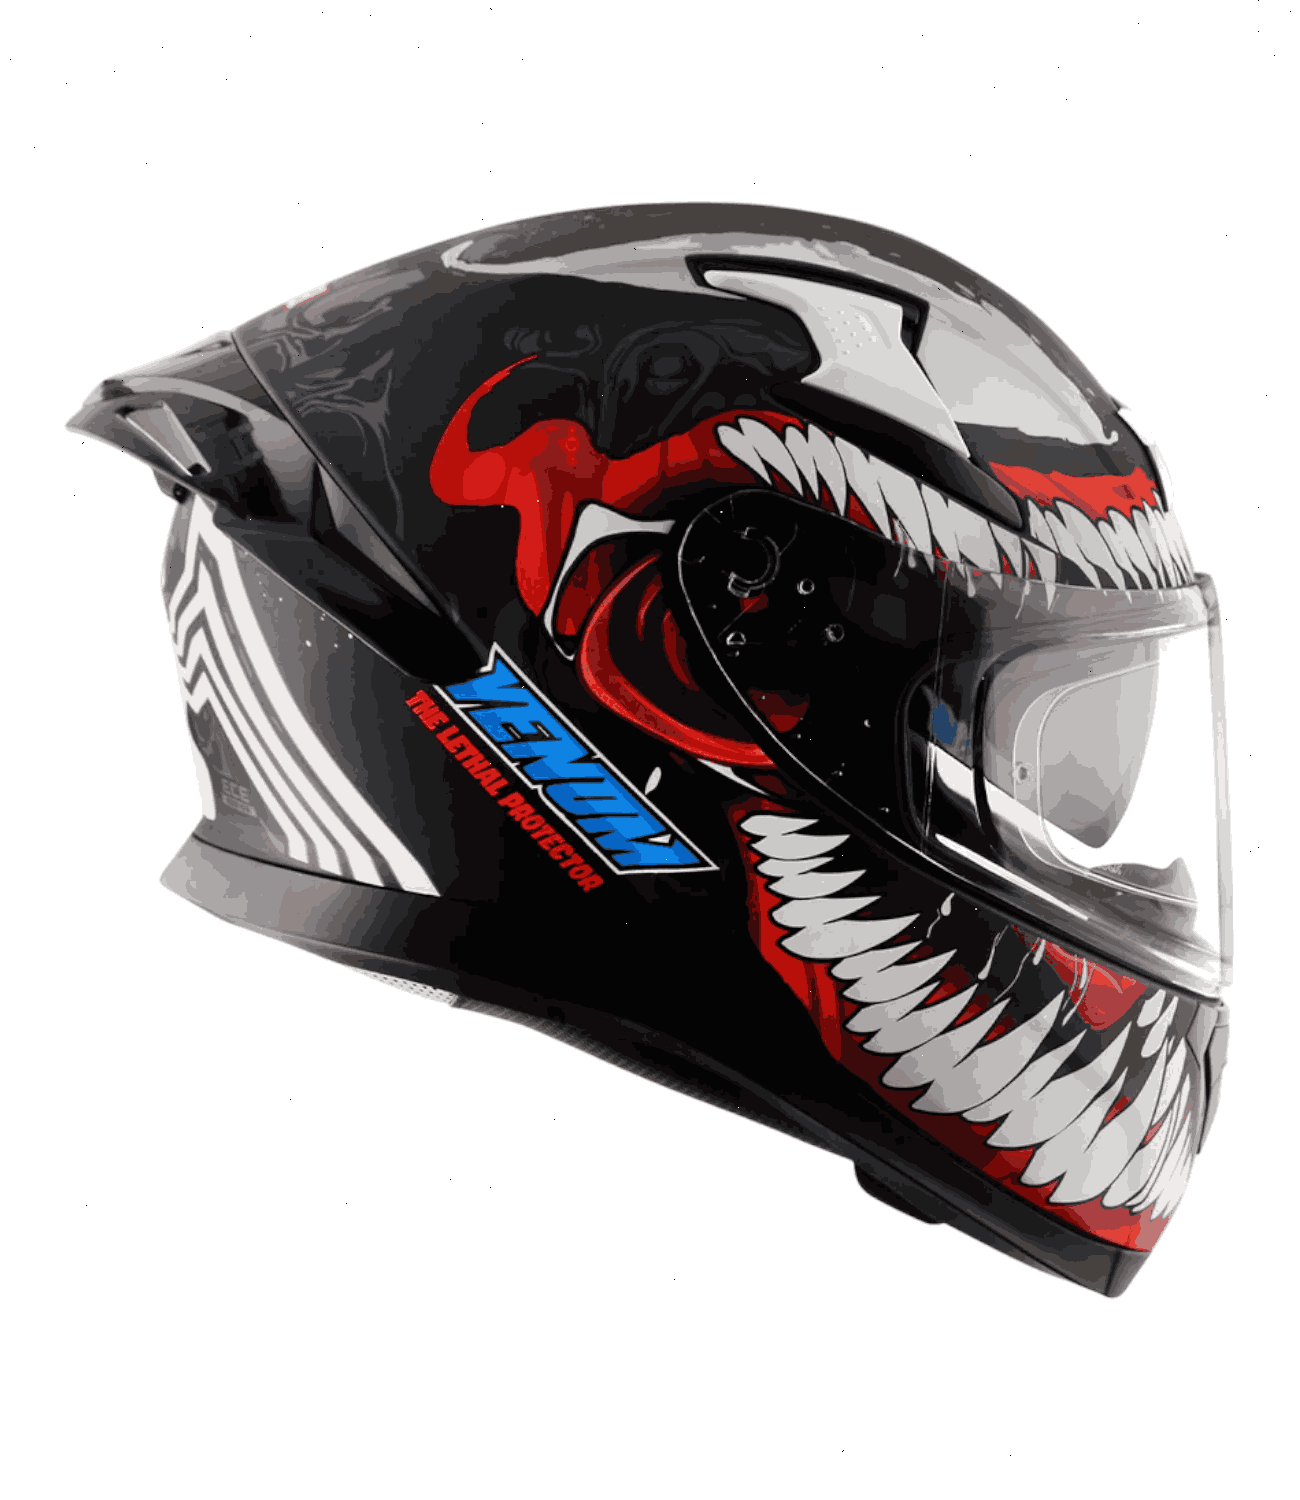 Axor Apex Marvel Venom Helmet Dull Black Red